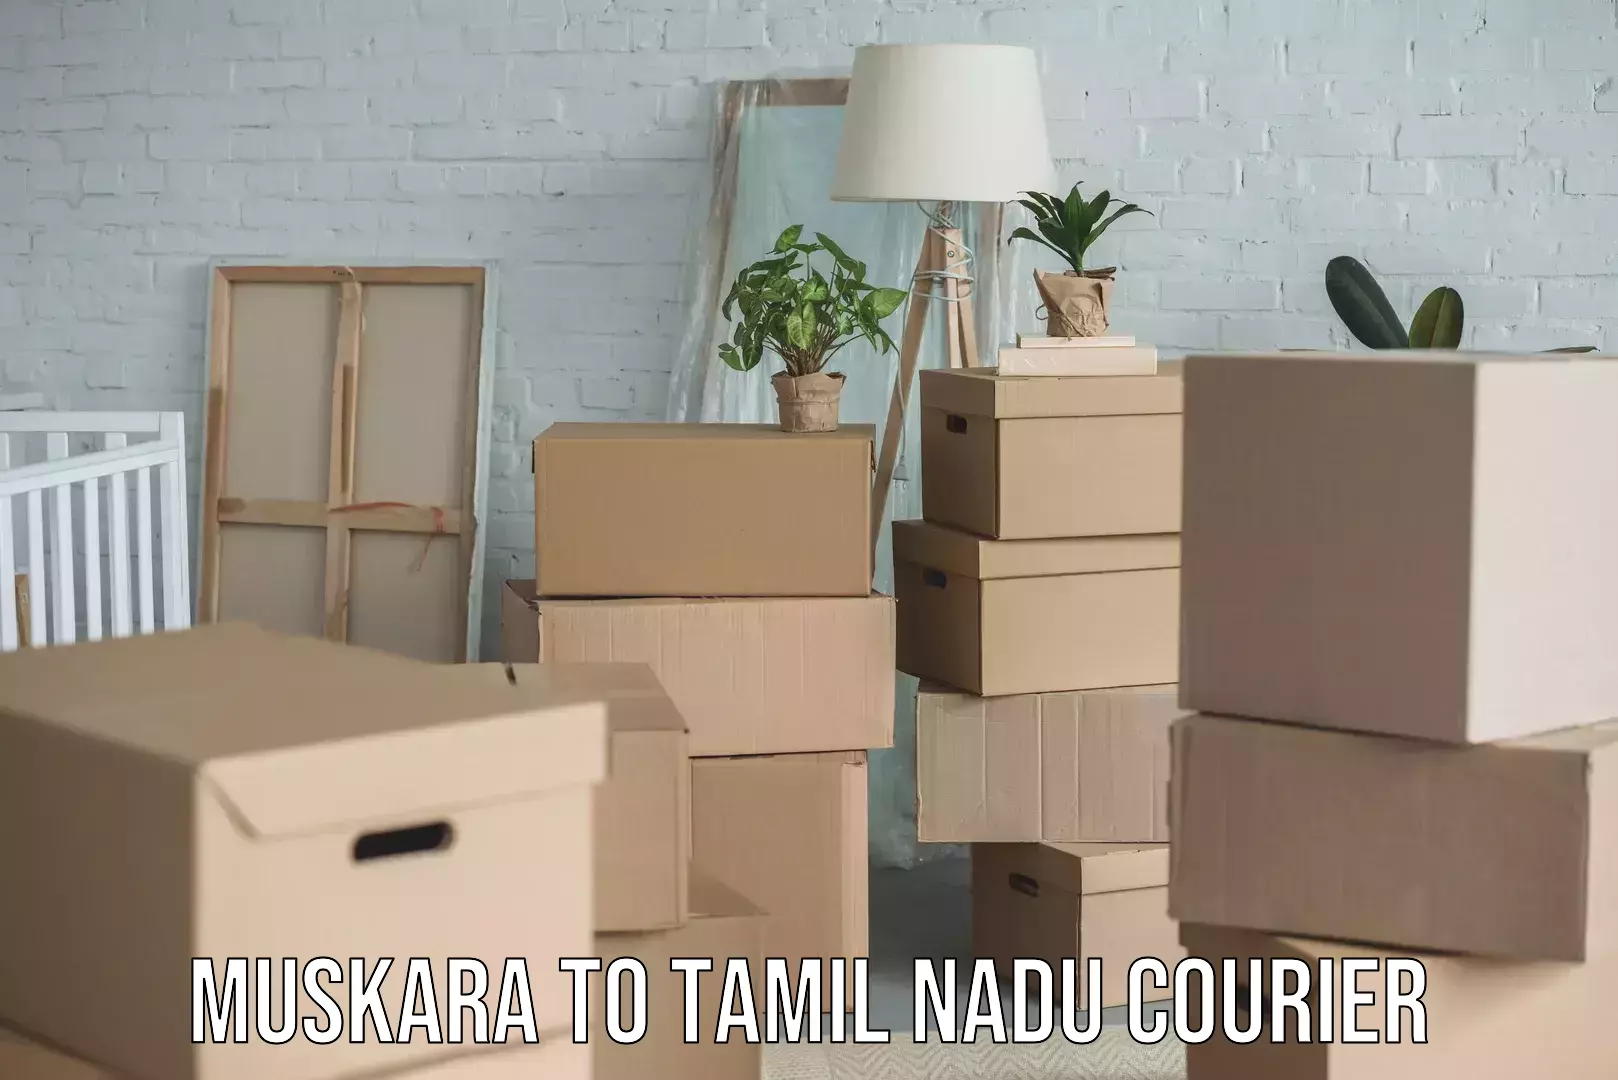 Home shifting experts Muskara to Tamil Nadu